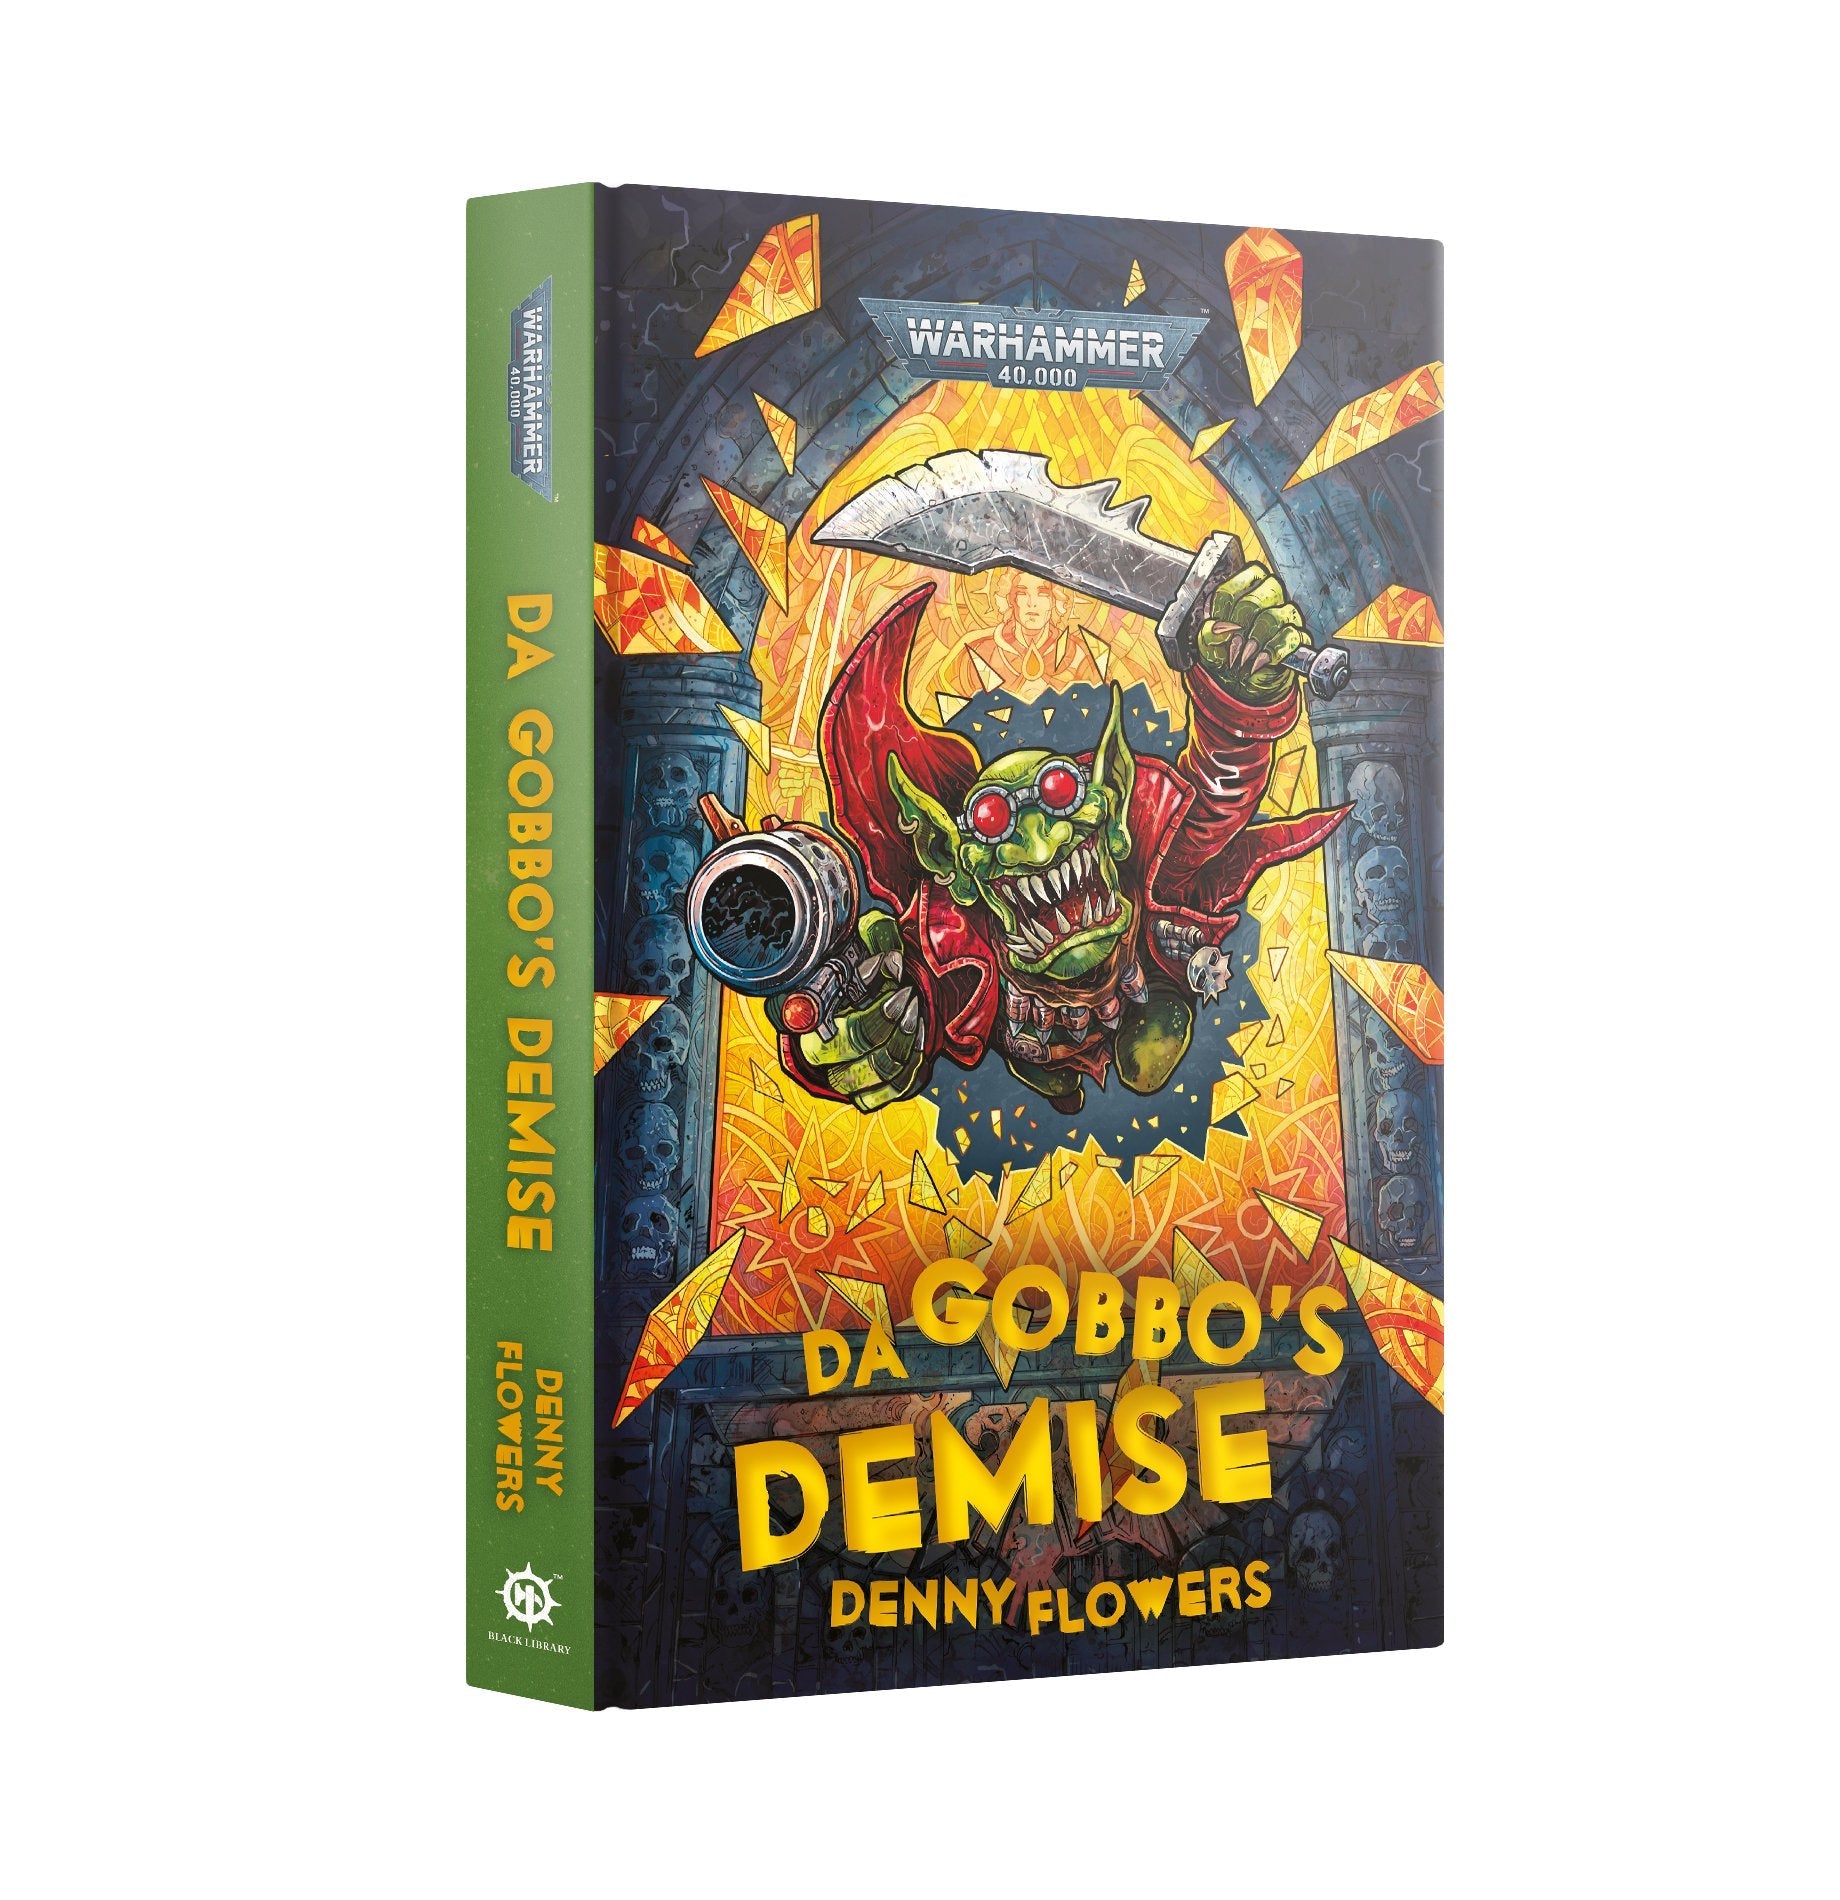 DA GOBBOS DEMISE (HB) | Multizone: Comics And Games